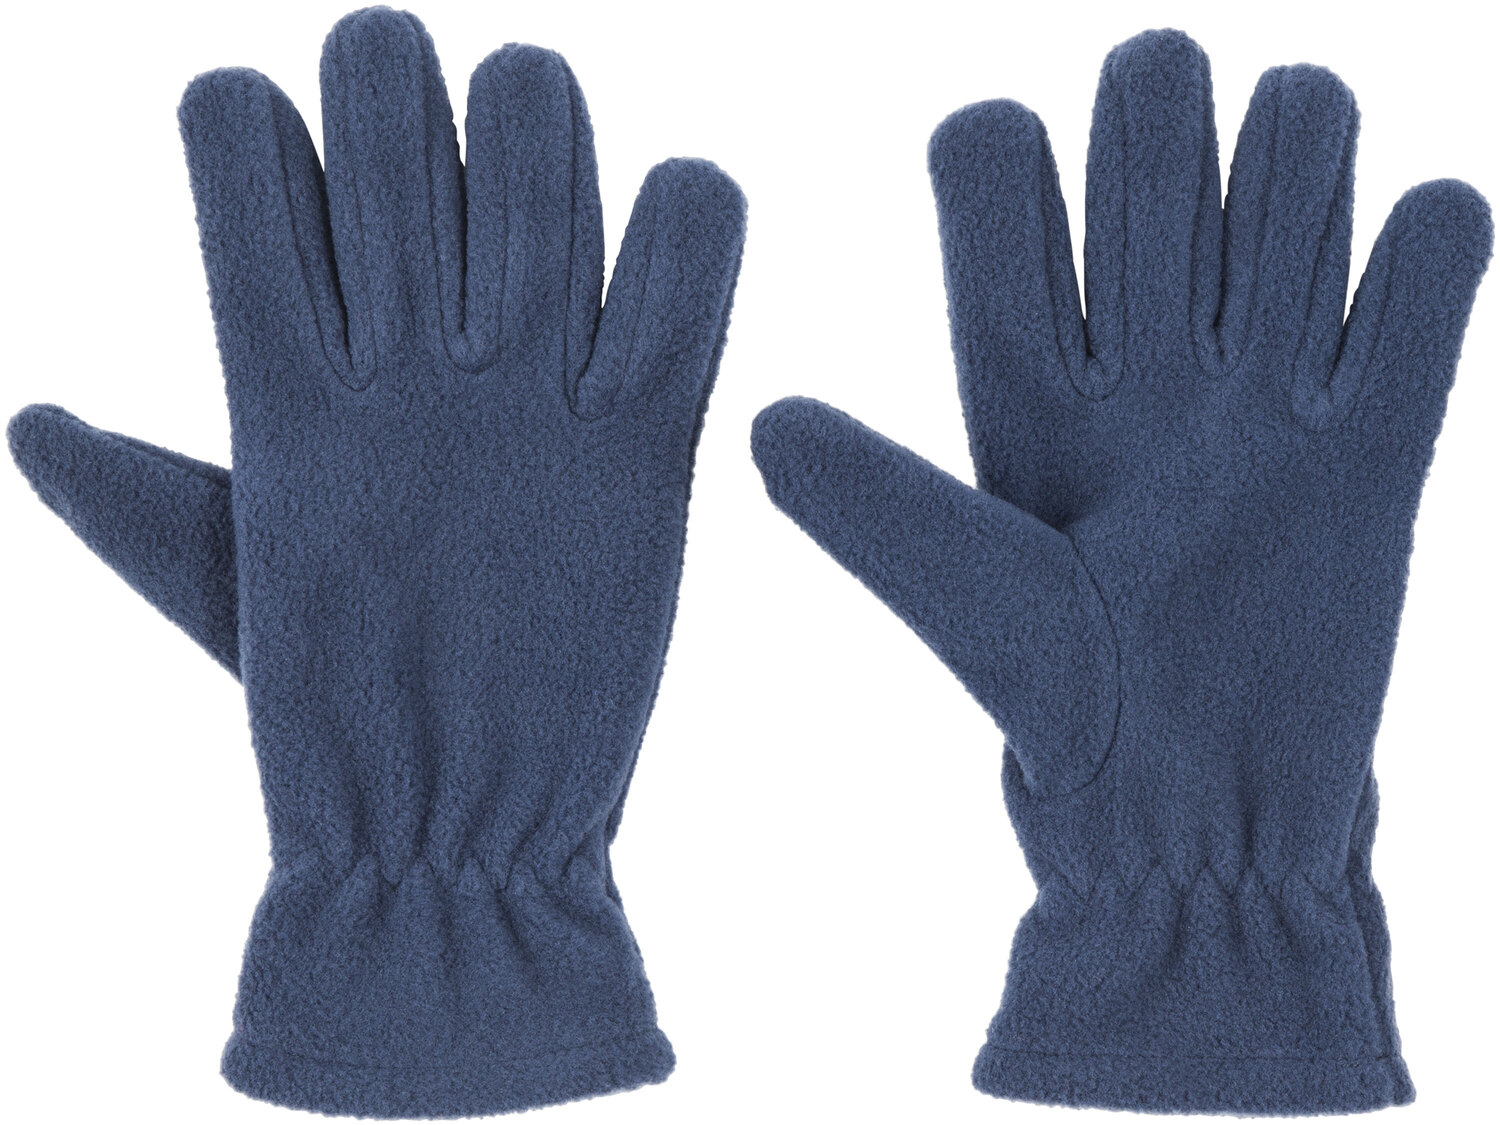 Chłopięce rękawiczki Crivit, cena 10,99 PLN 
4 wzory 
- rozmiary: 86-164* lub ...